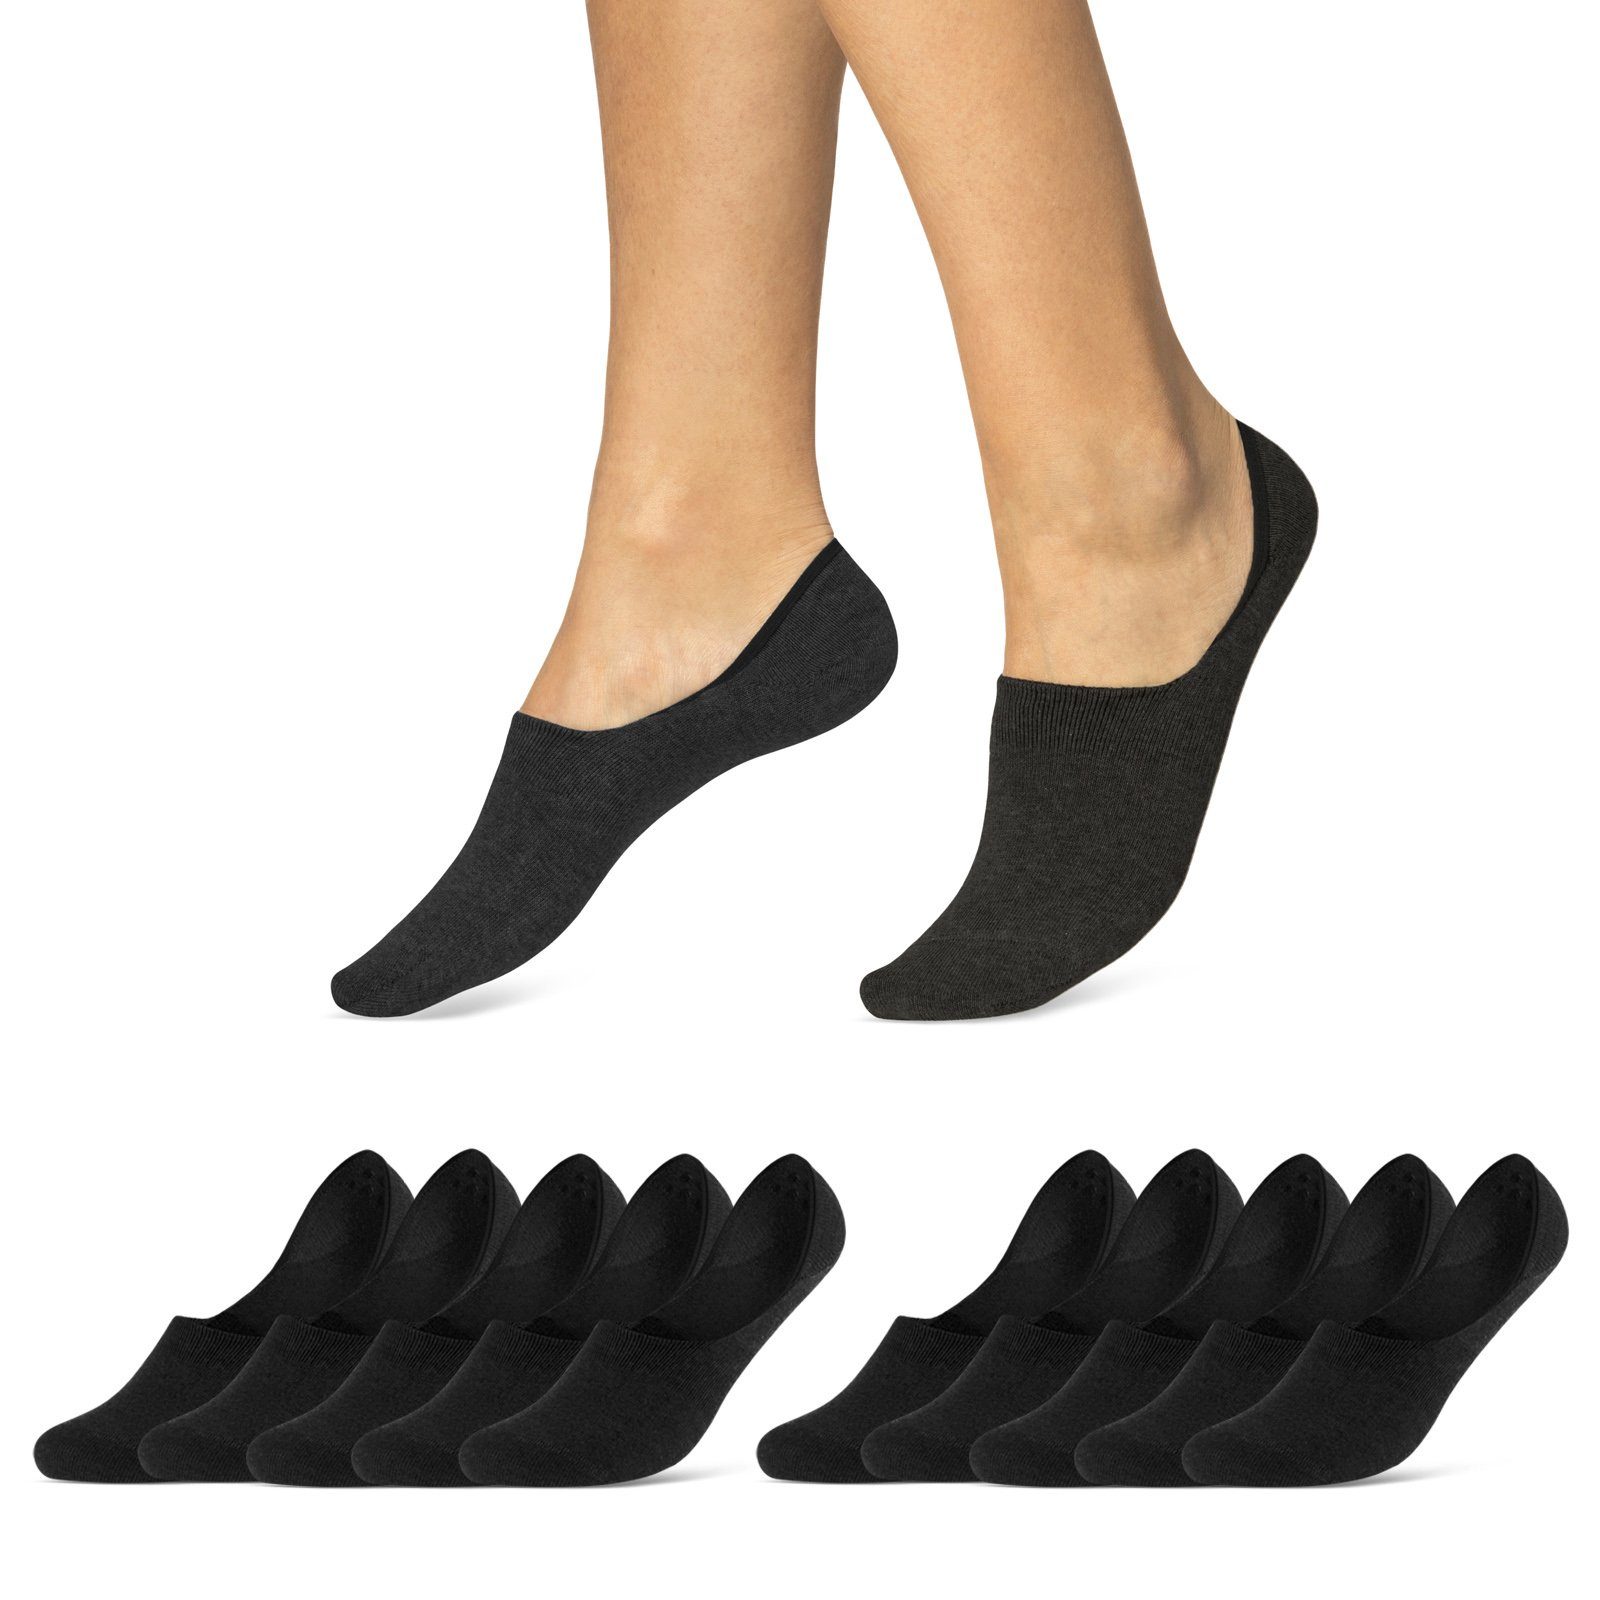 sockenkauf24 Füßlinge 10 Paar Premium Füßlinge aus gekämmter Baumwolle Damen & Herren (Schwarz, 39-42) Sneaker Socken ohne drückende Naht (Exclusive Line) - 70103T WP